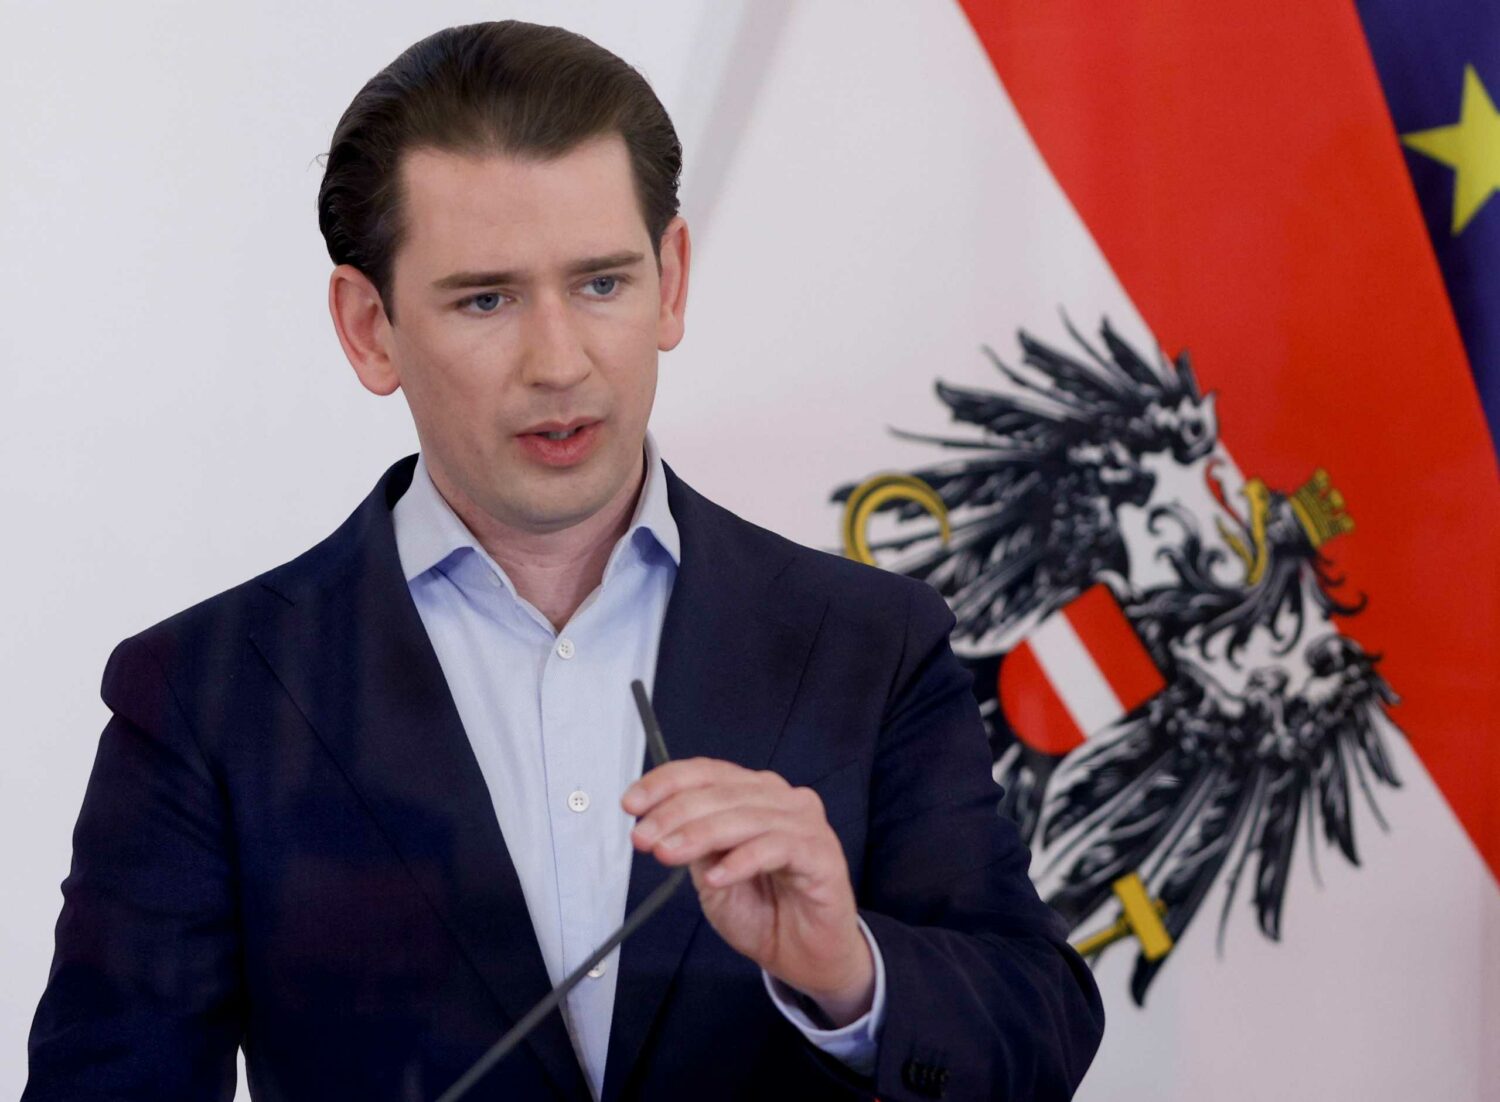 Αυστρία: Παραιτήθηκε ο καγκελάριος Σεμπάστιαν Κουρτς